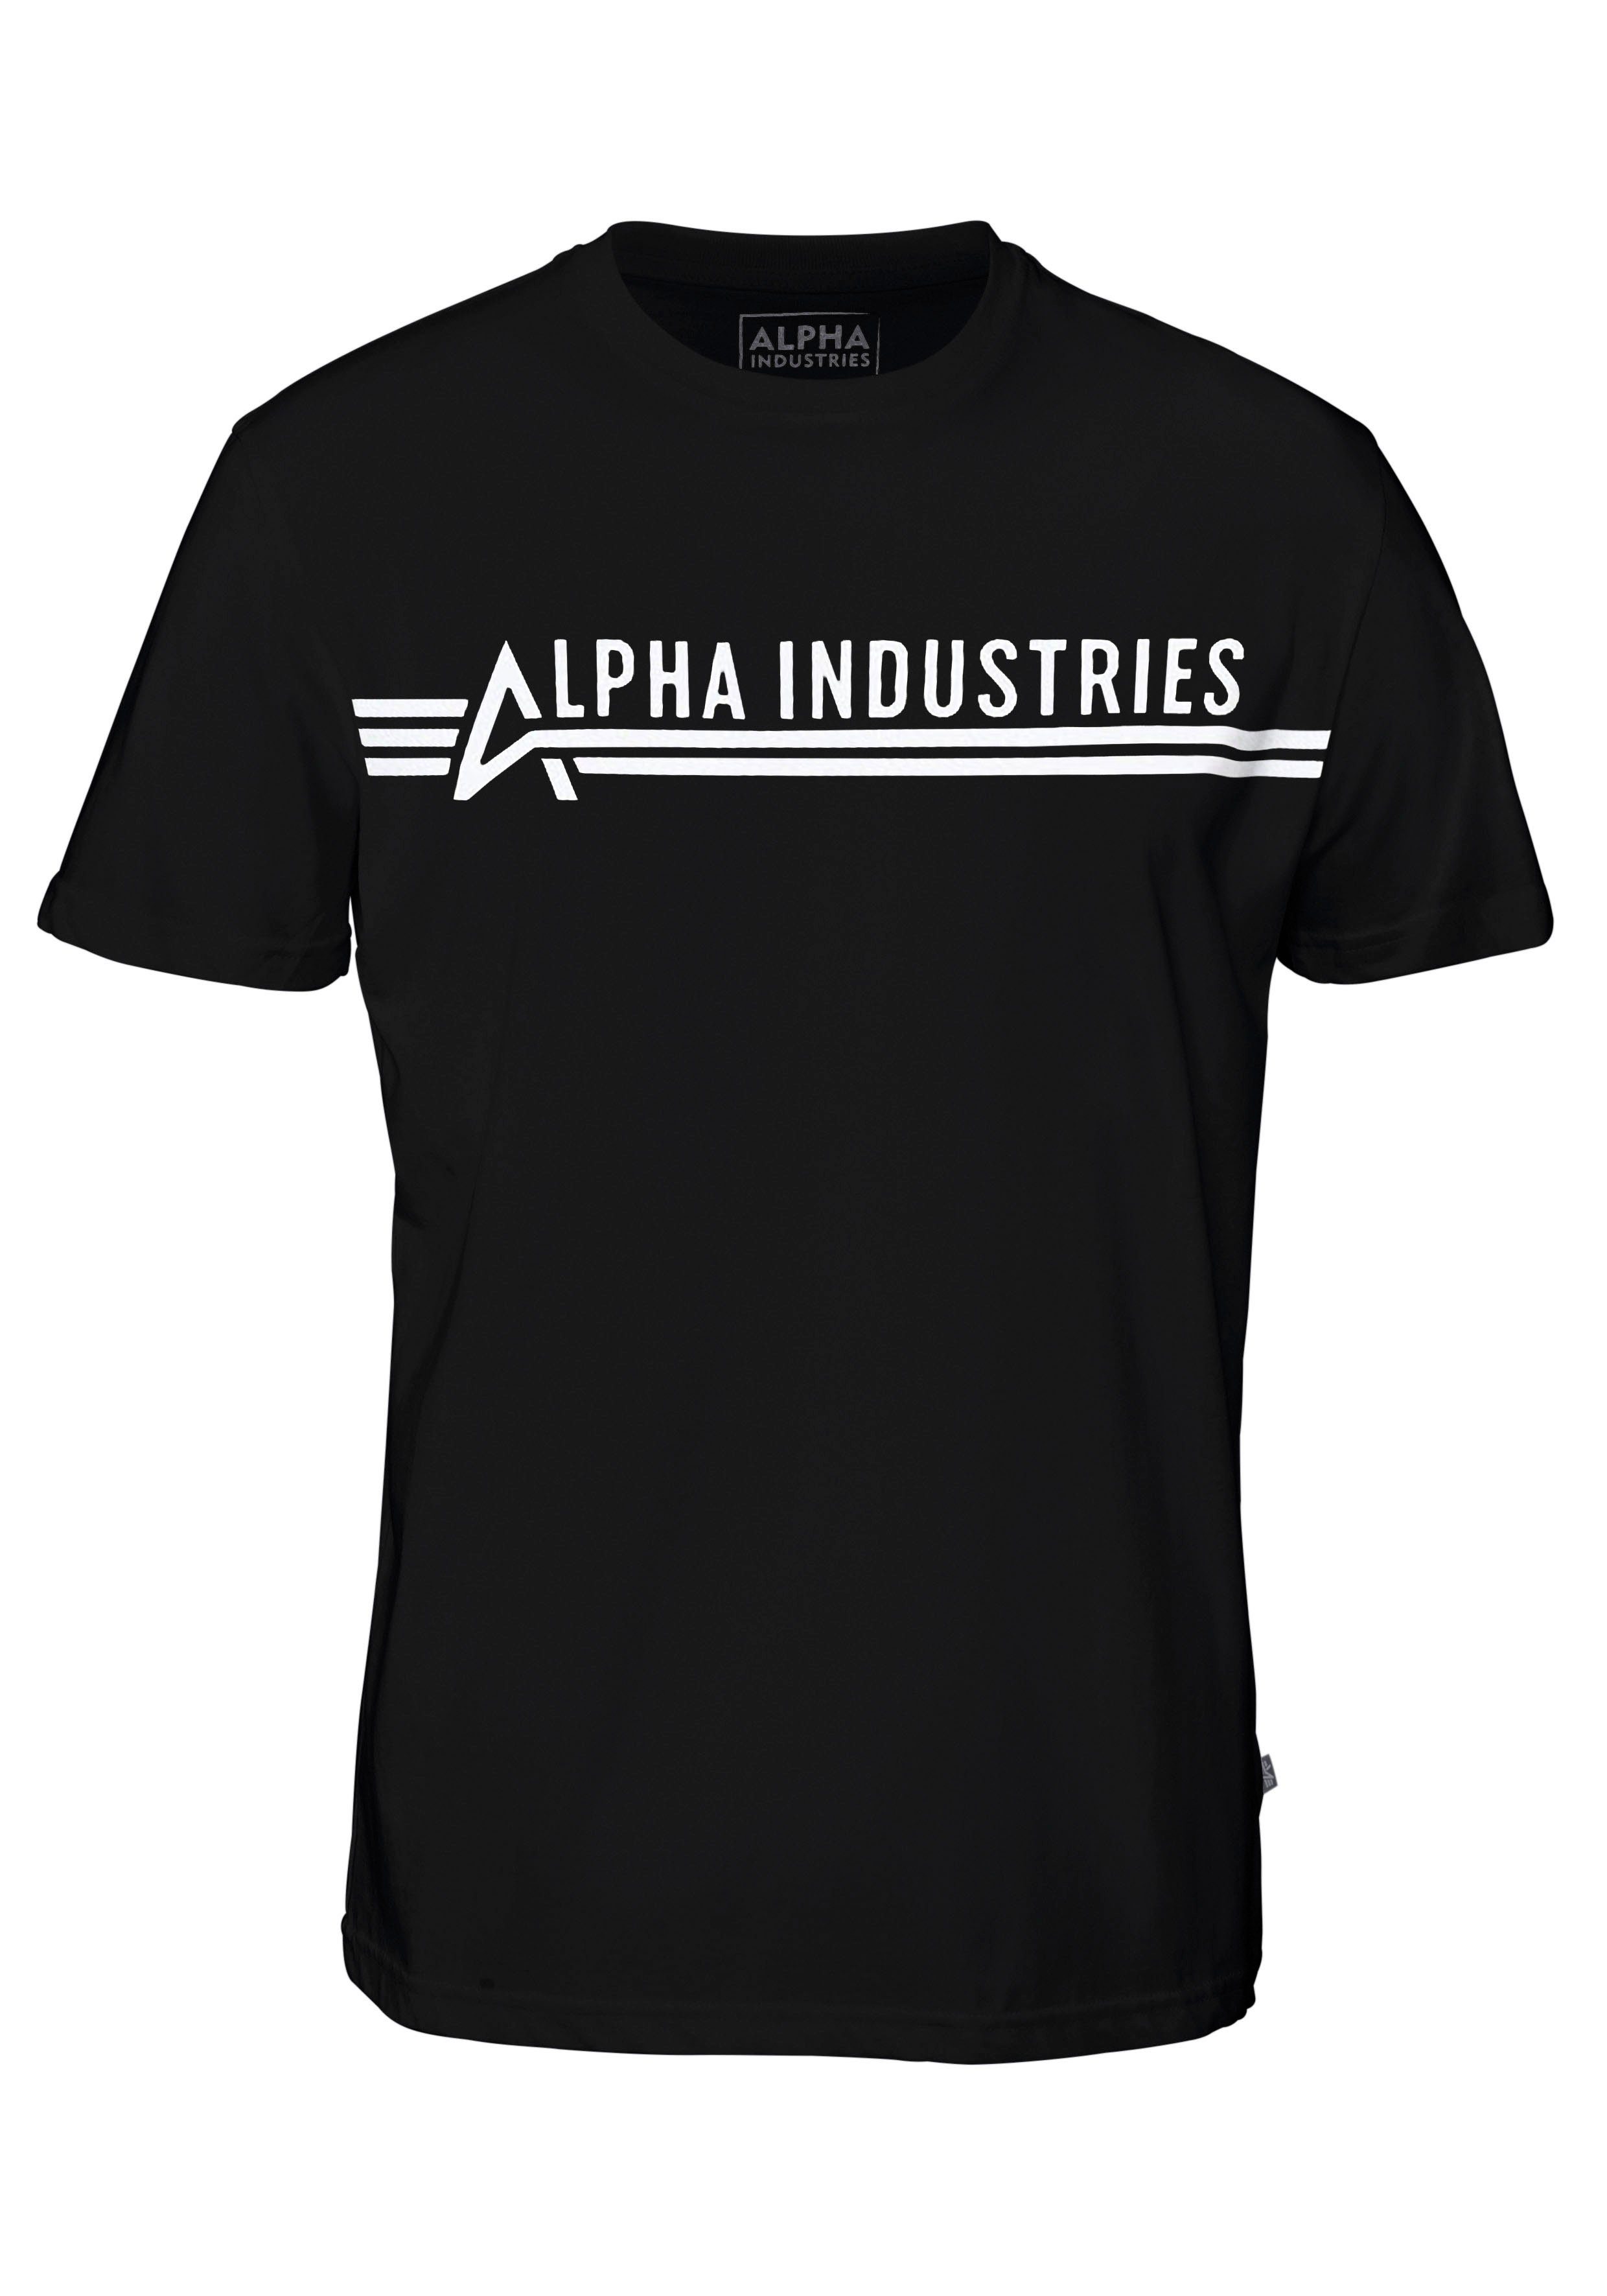 Rundhalsshirt white INDUSTRIES T Industries Alpha black ALPHA